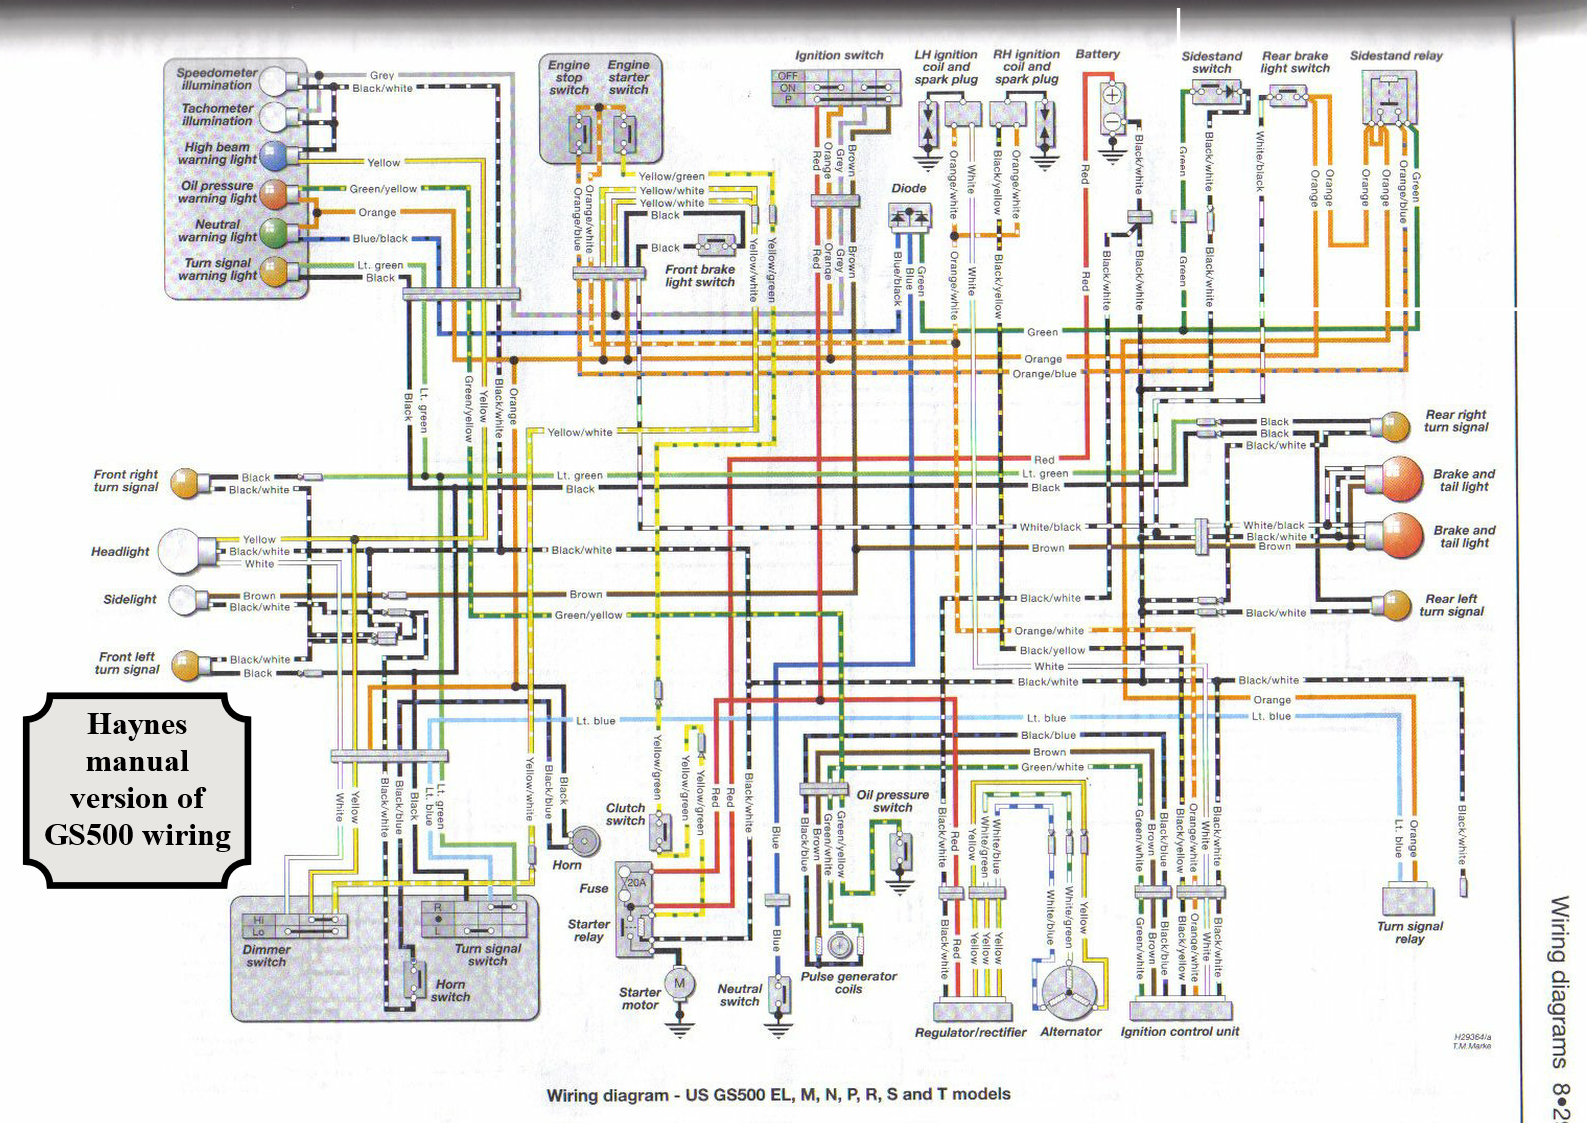 Haynes GS500 wiring diagram